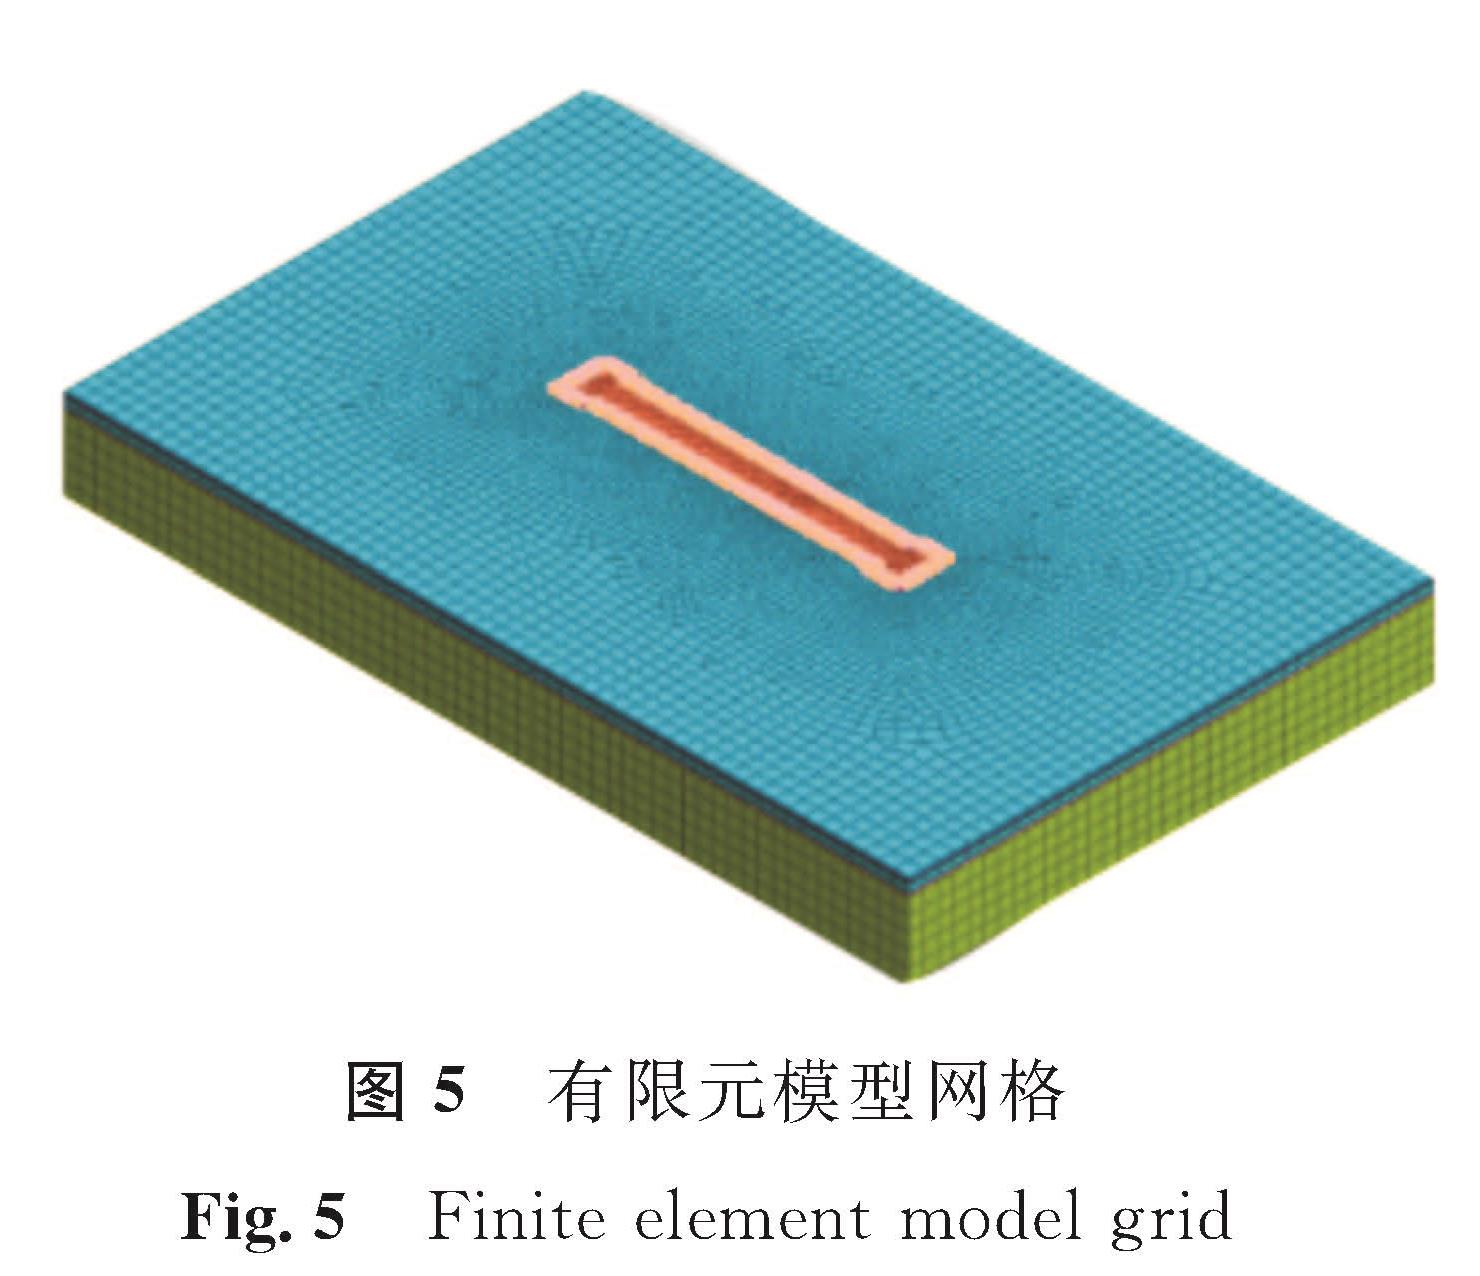 图5 有限元模型网格<br/>Fig.5 Finite element model grid